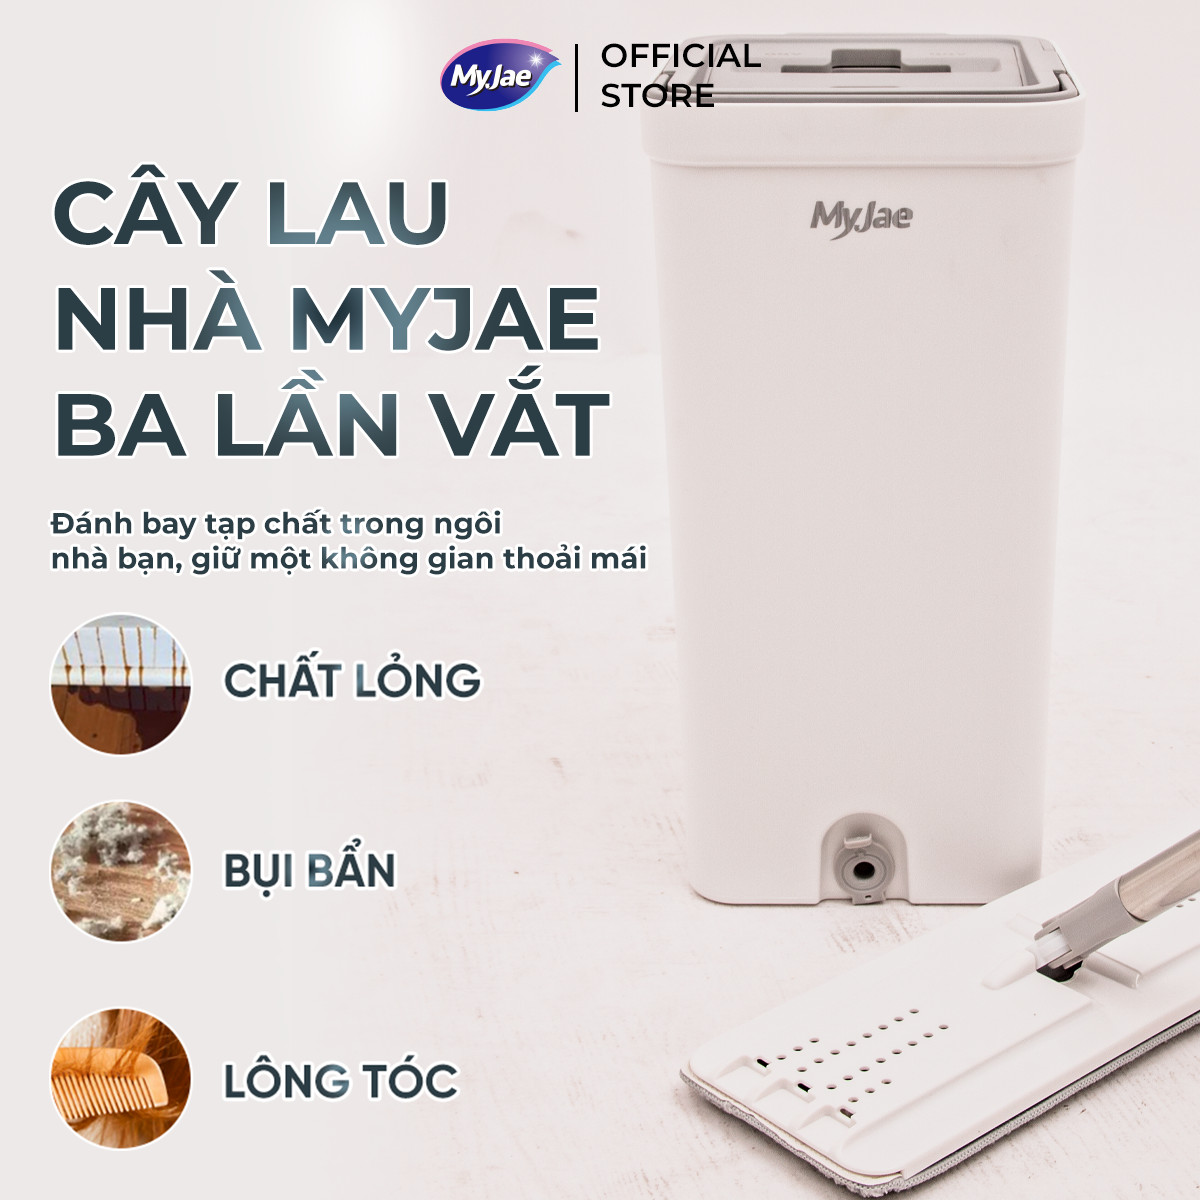 Combo 3 Bông Lau + 1 Bộ Lau Nhà MyJae Đài Loan Sợi Microfiber 2 Ngăn Tự Vắt Xoay 360 Độ Thông Minh 123cm